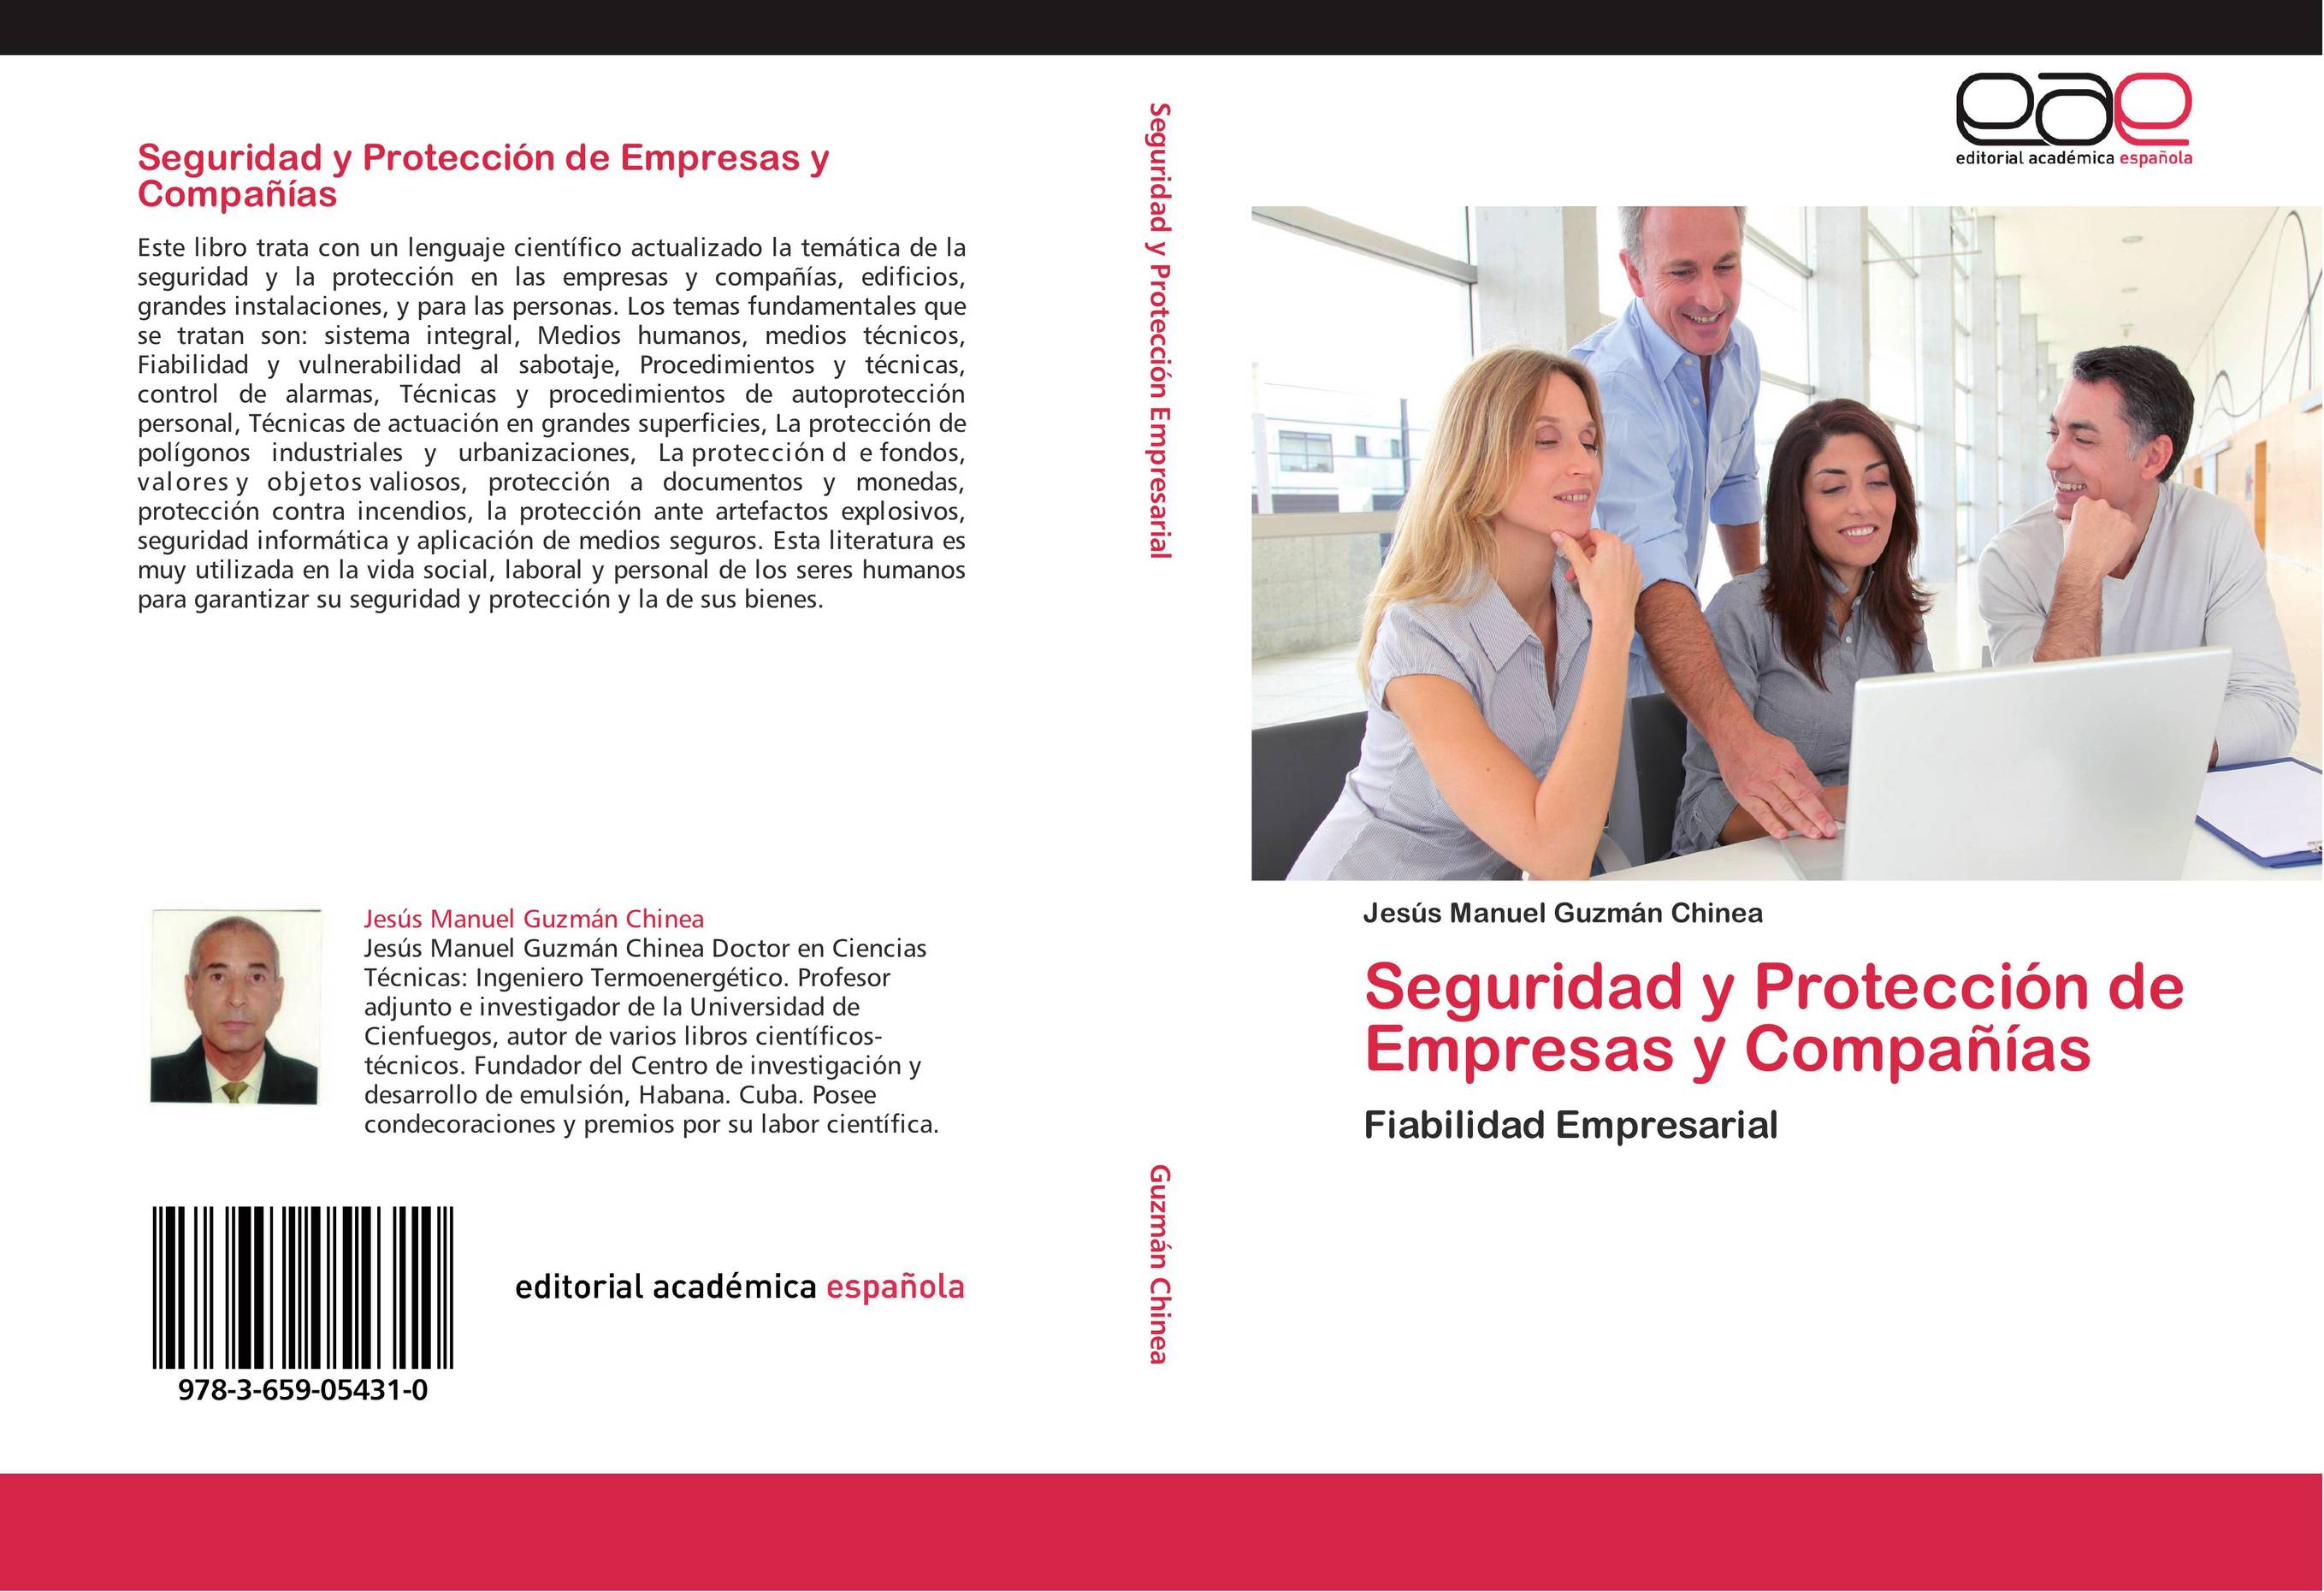 Seguridad y Protección de Empresas y Compañías